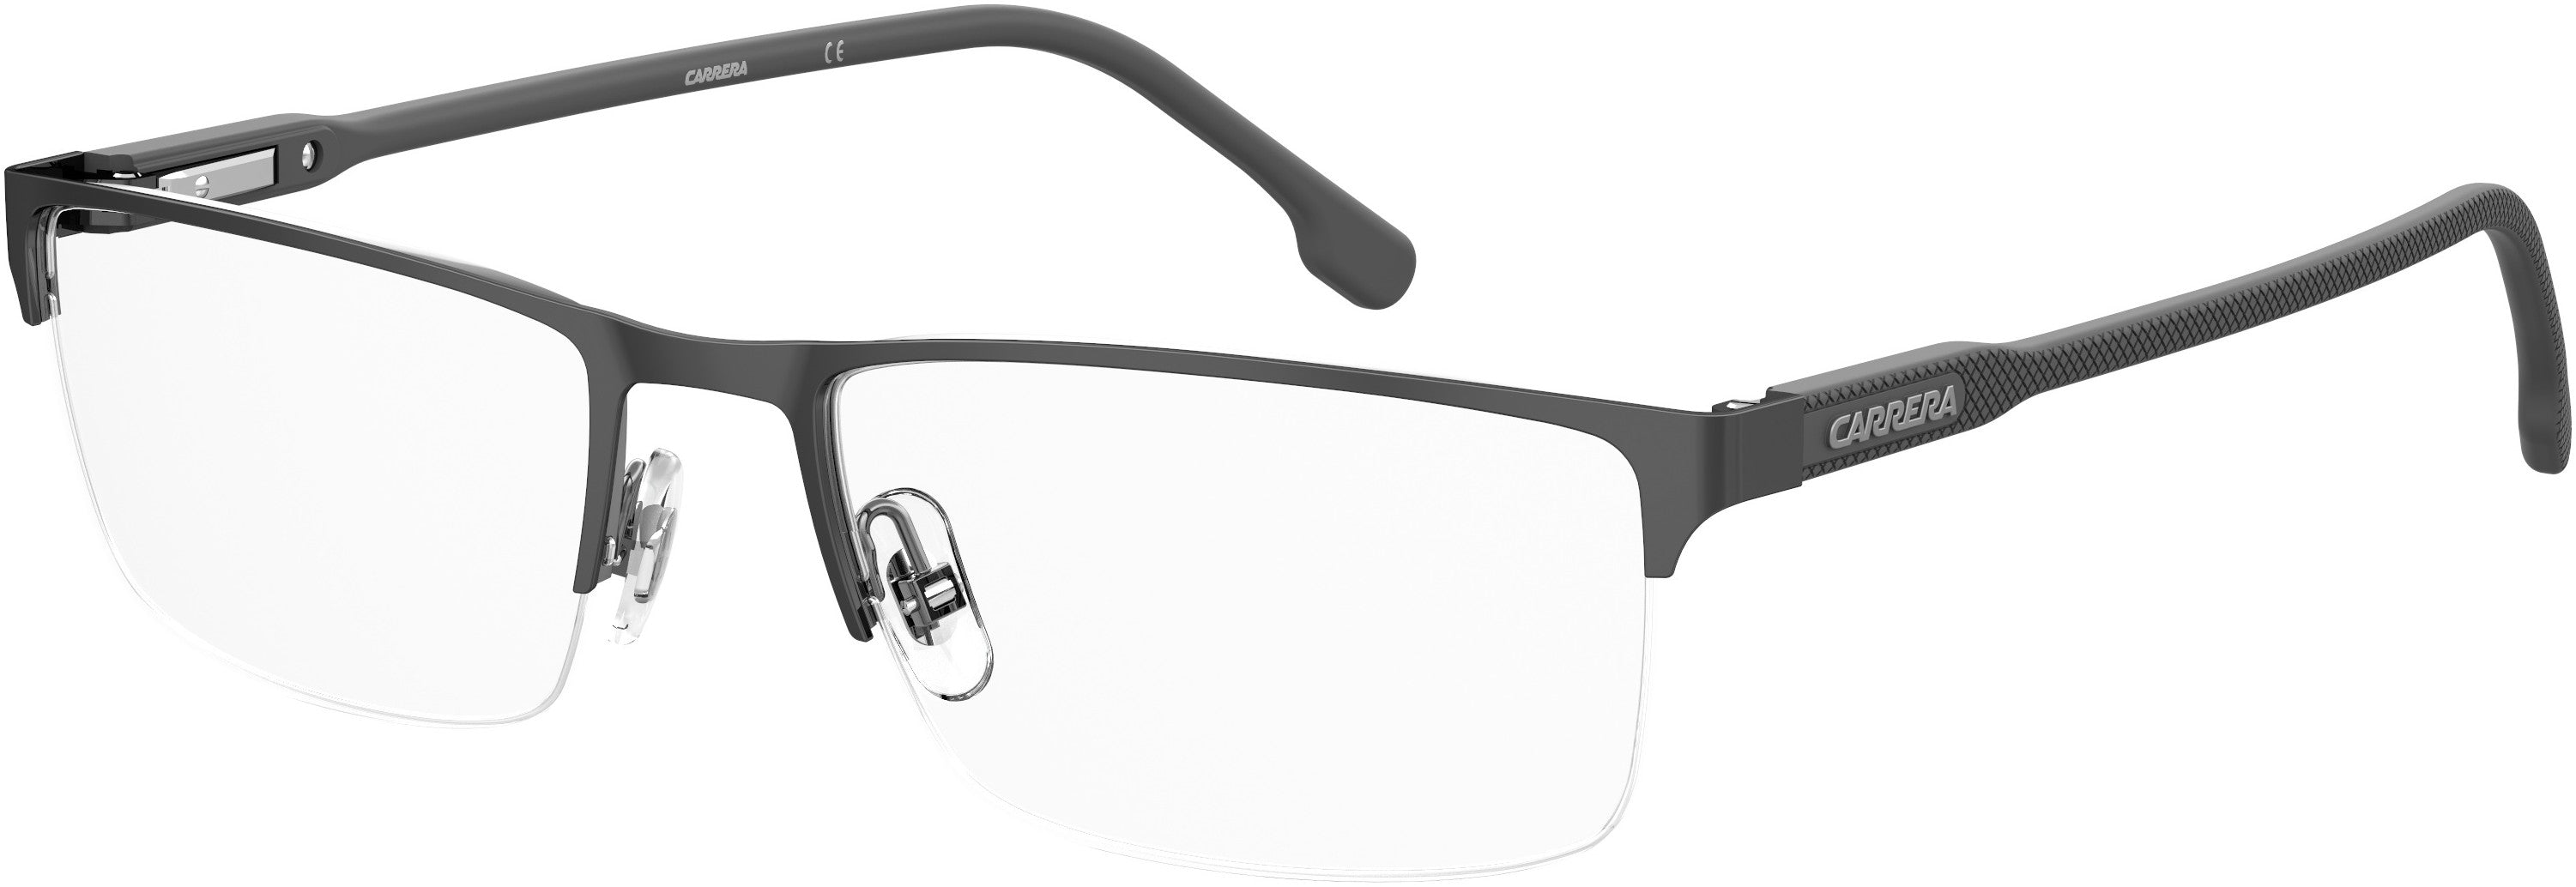  Carrera 243 Rectangular Eyeglasses 0V81-0V81  Dark Ruthenium Black (00 Demo Lens)